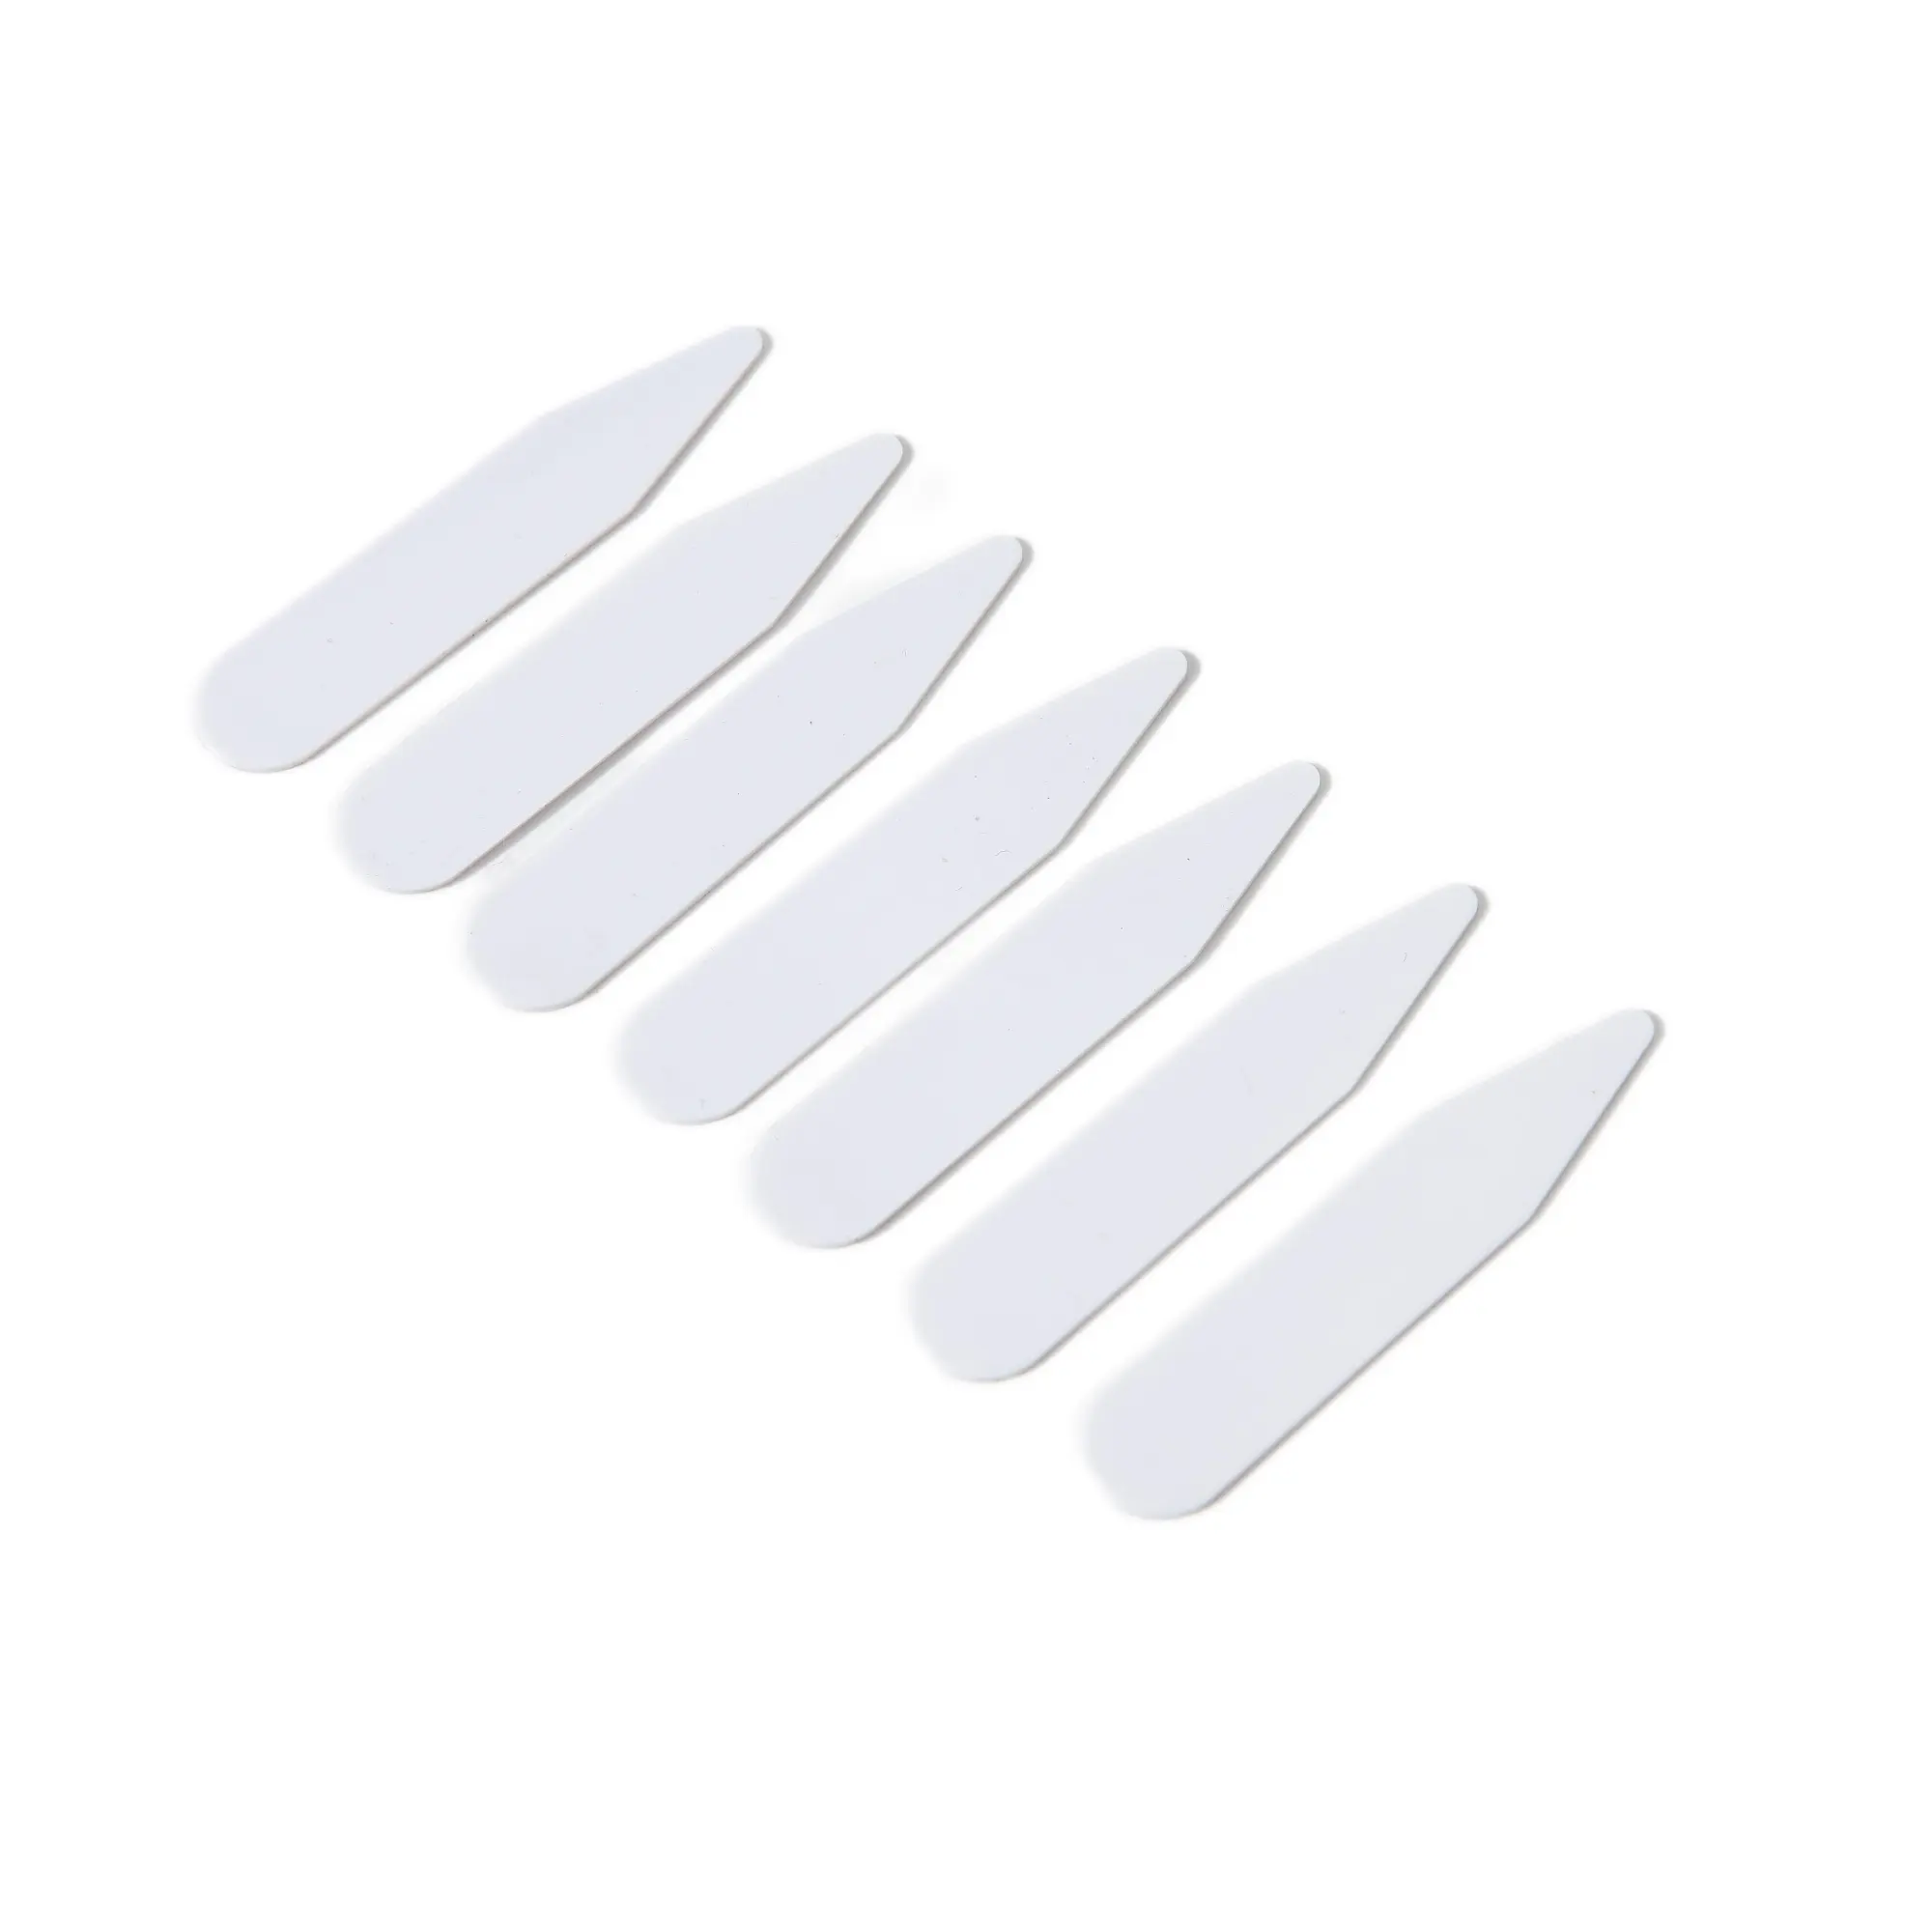 Rigid PVC White plastic Collar stays Collar bones